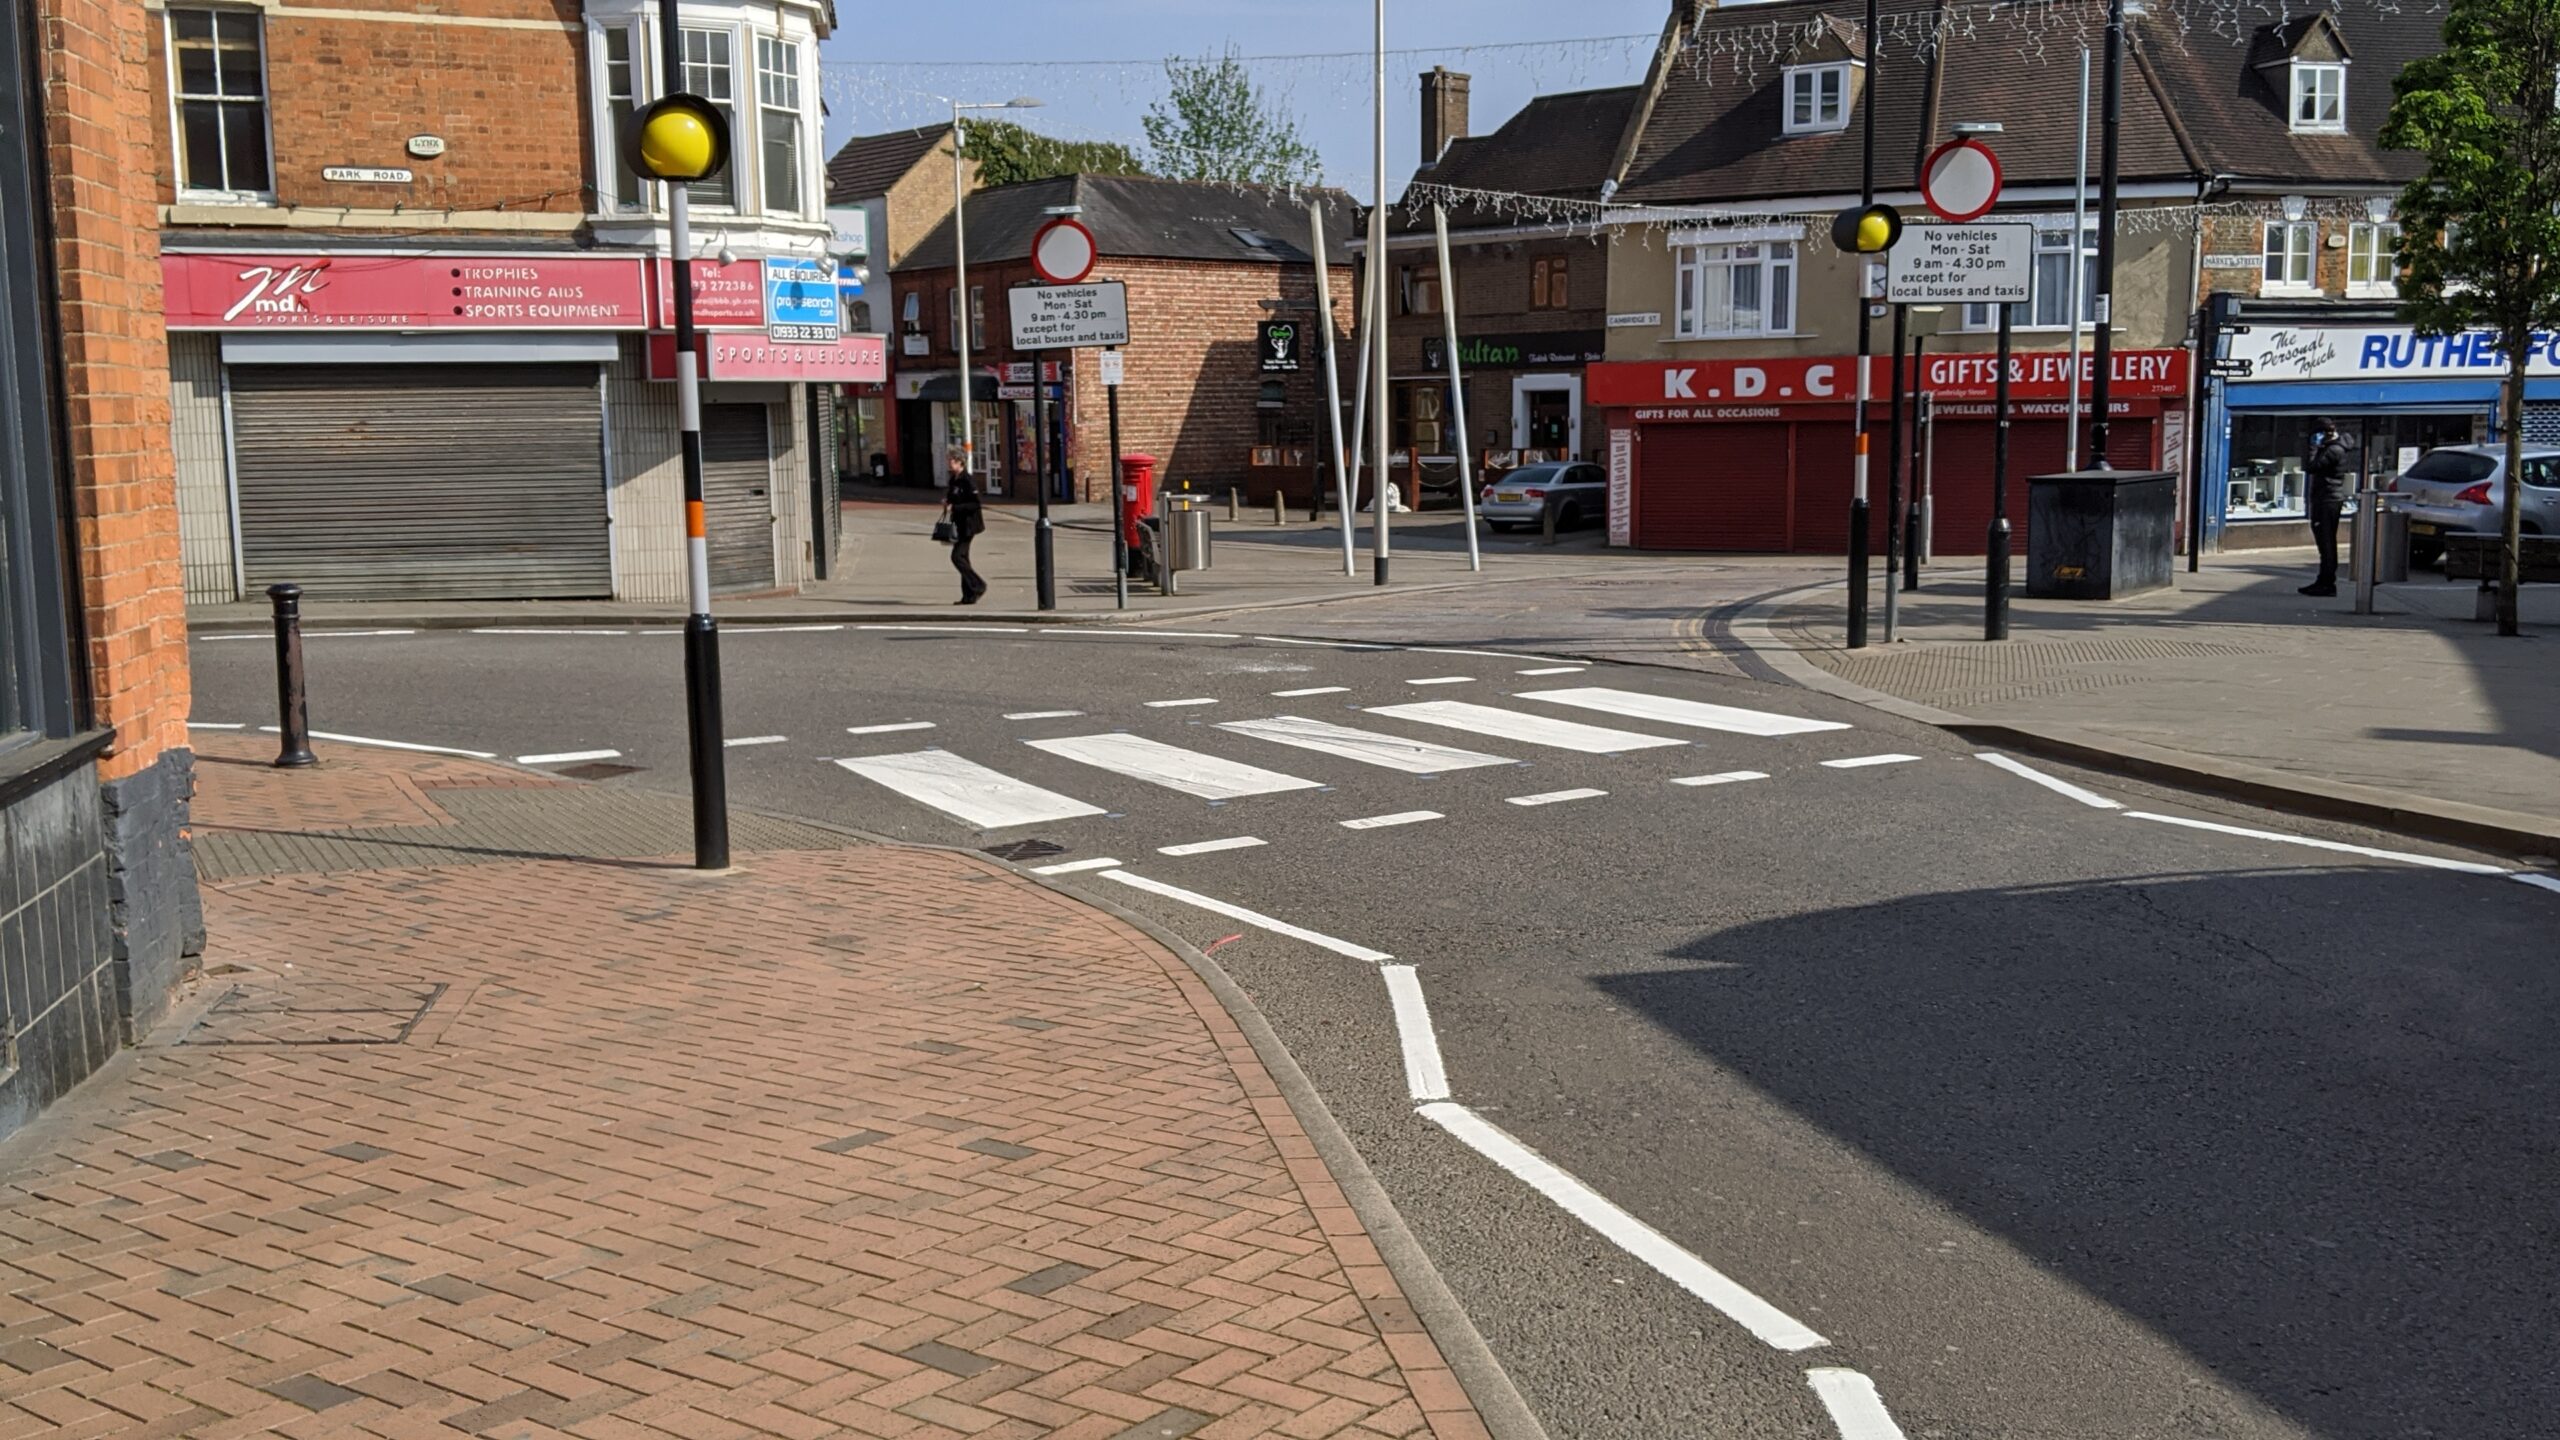 Repainted zebra crossing - April 20202